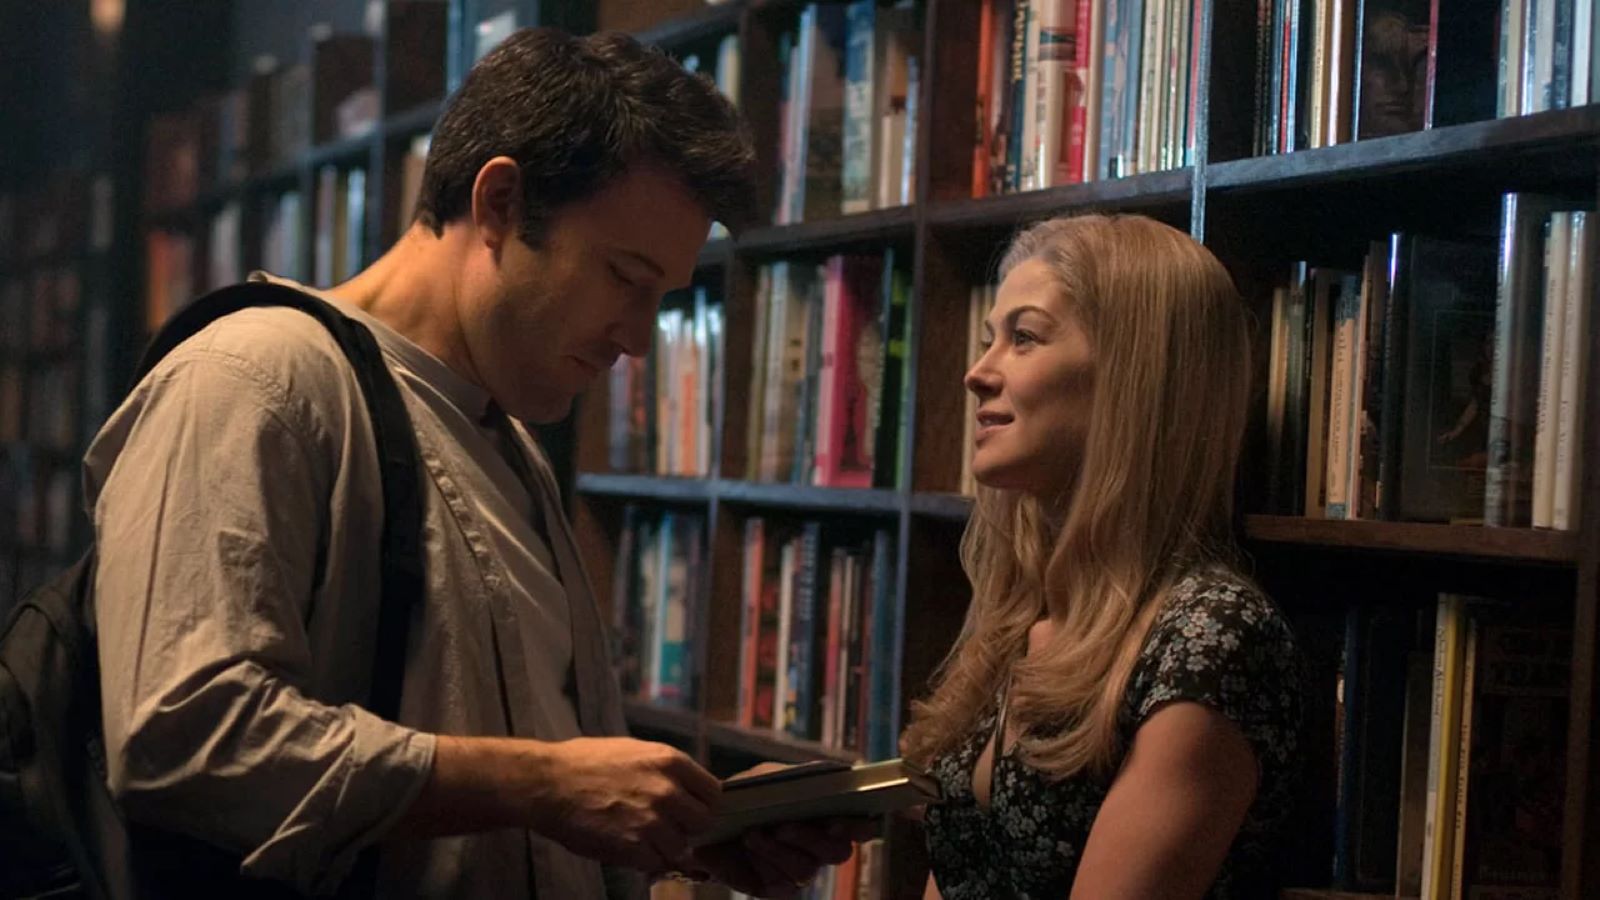 L'amore bugiardo - Gone Girl stasera su Rai 4: trama e cast del film di David Fincher con Ben Affleck